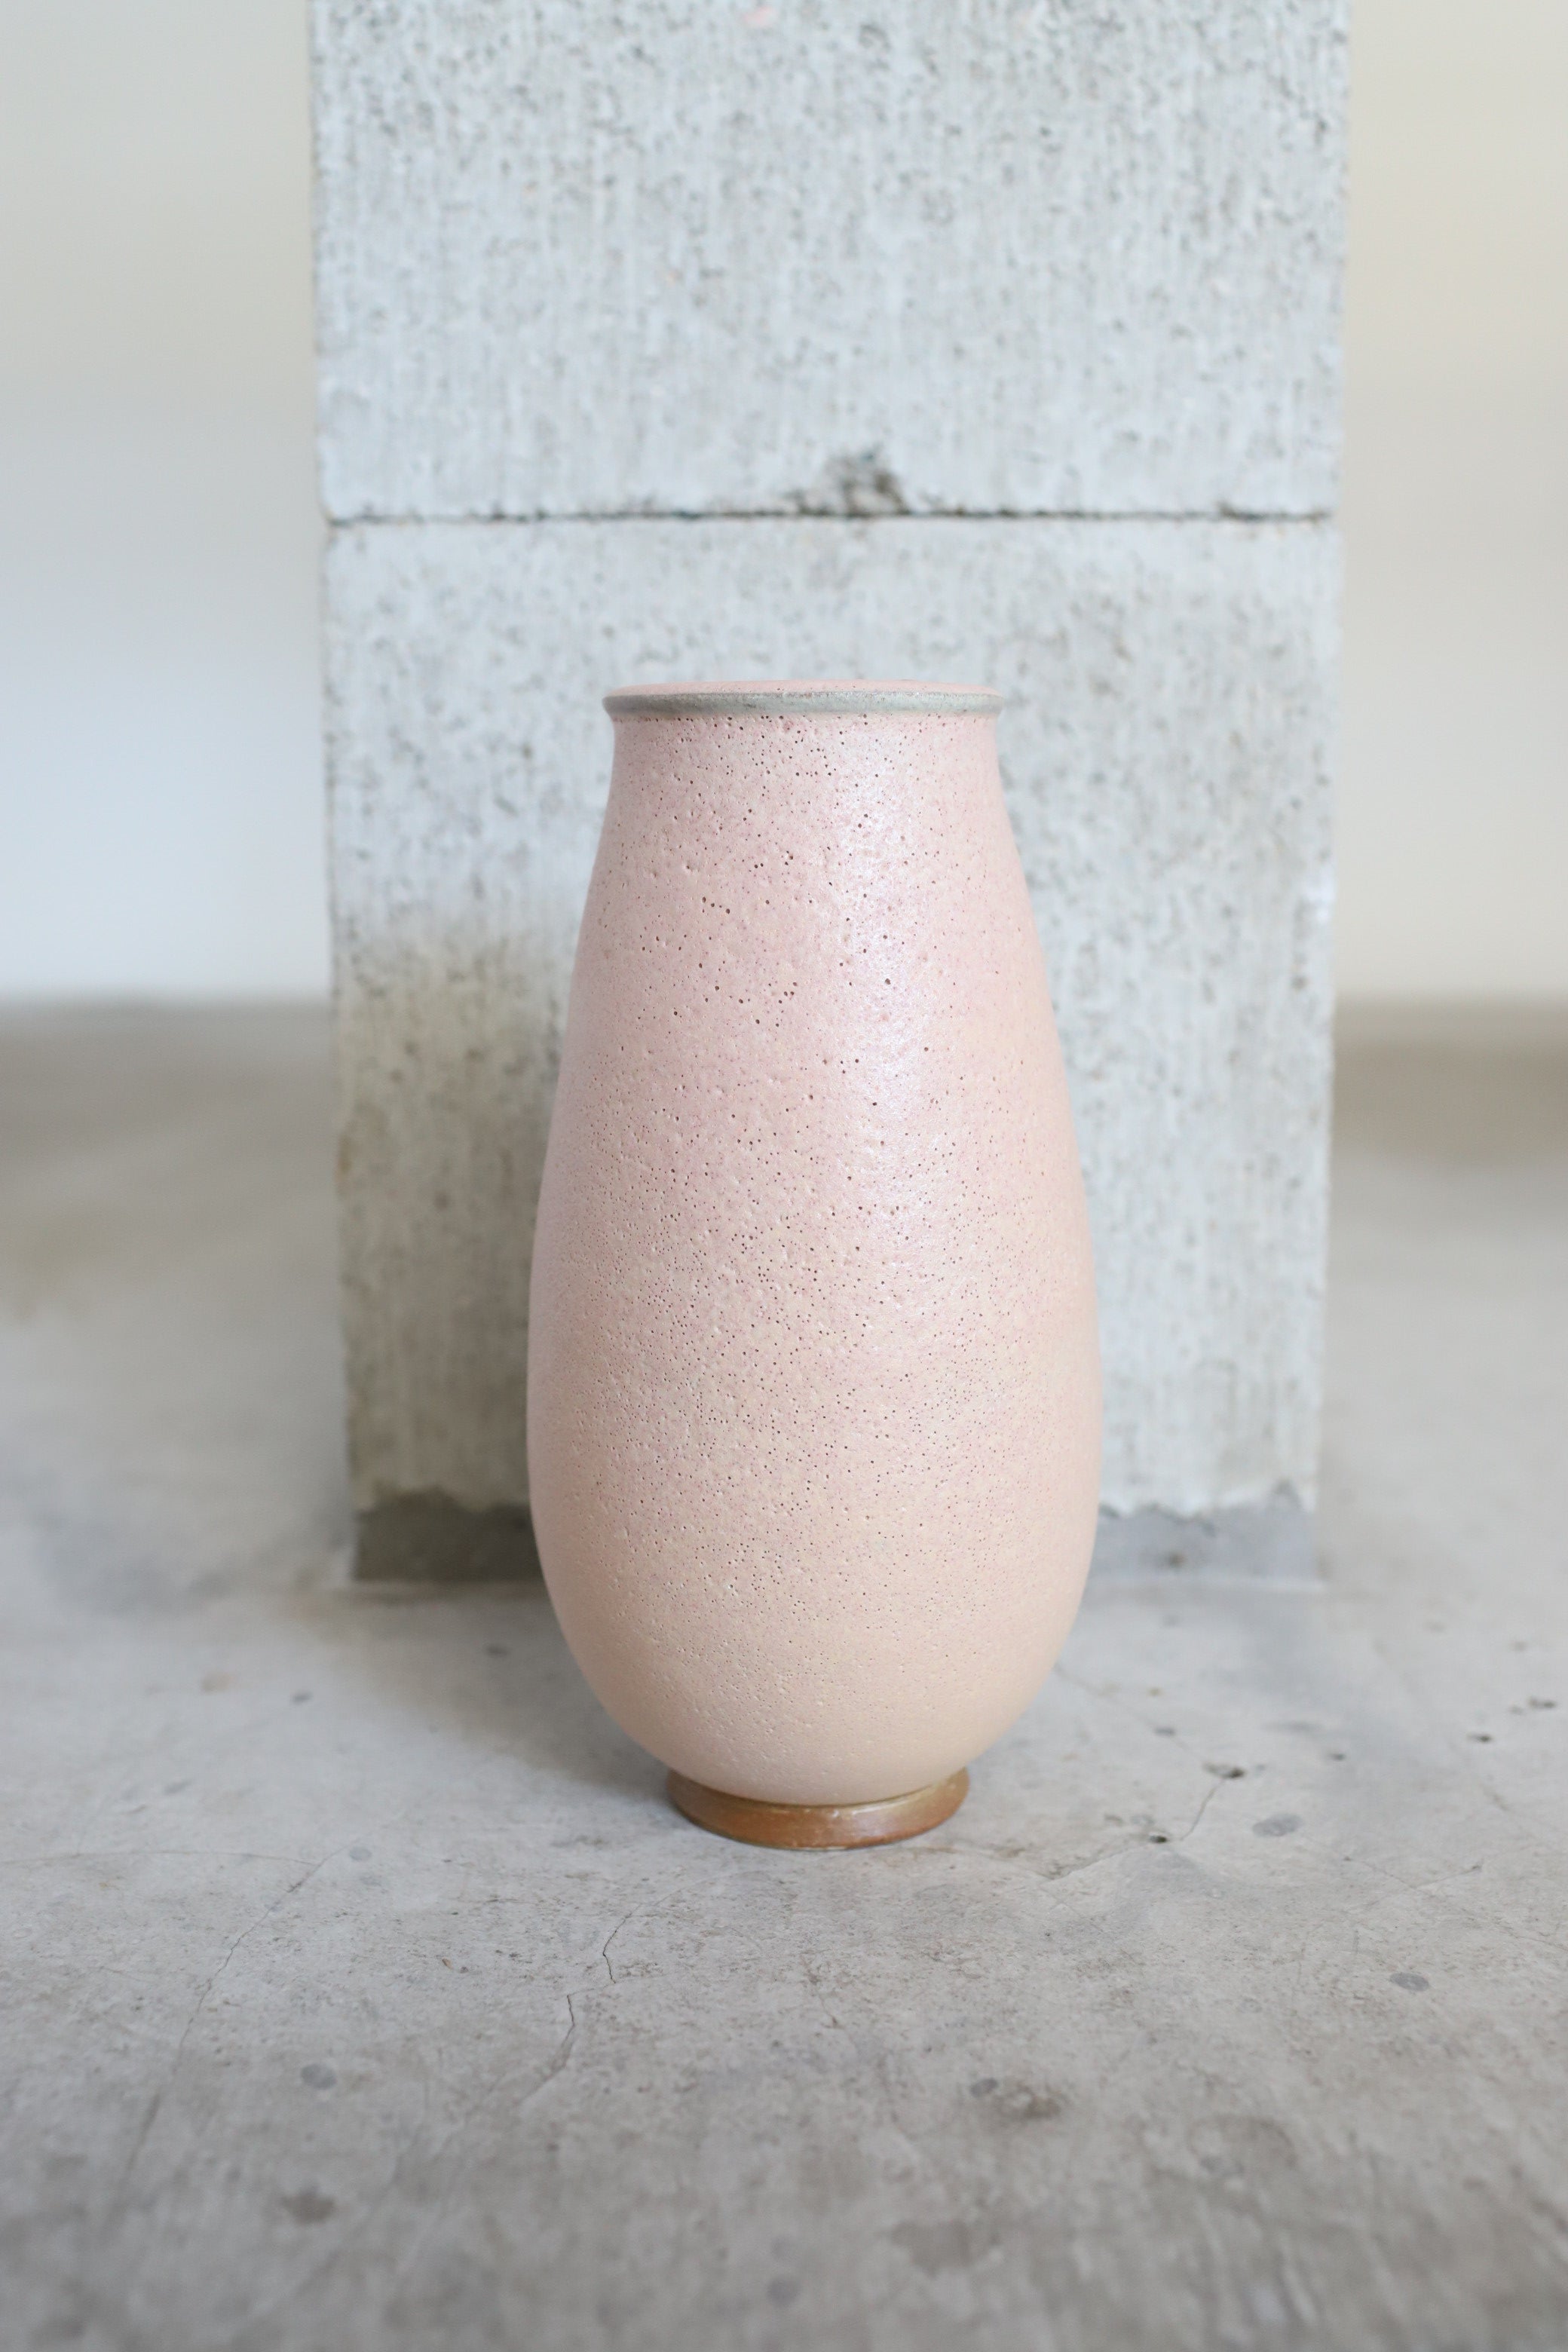 February Vase #5